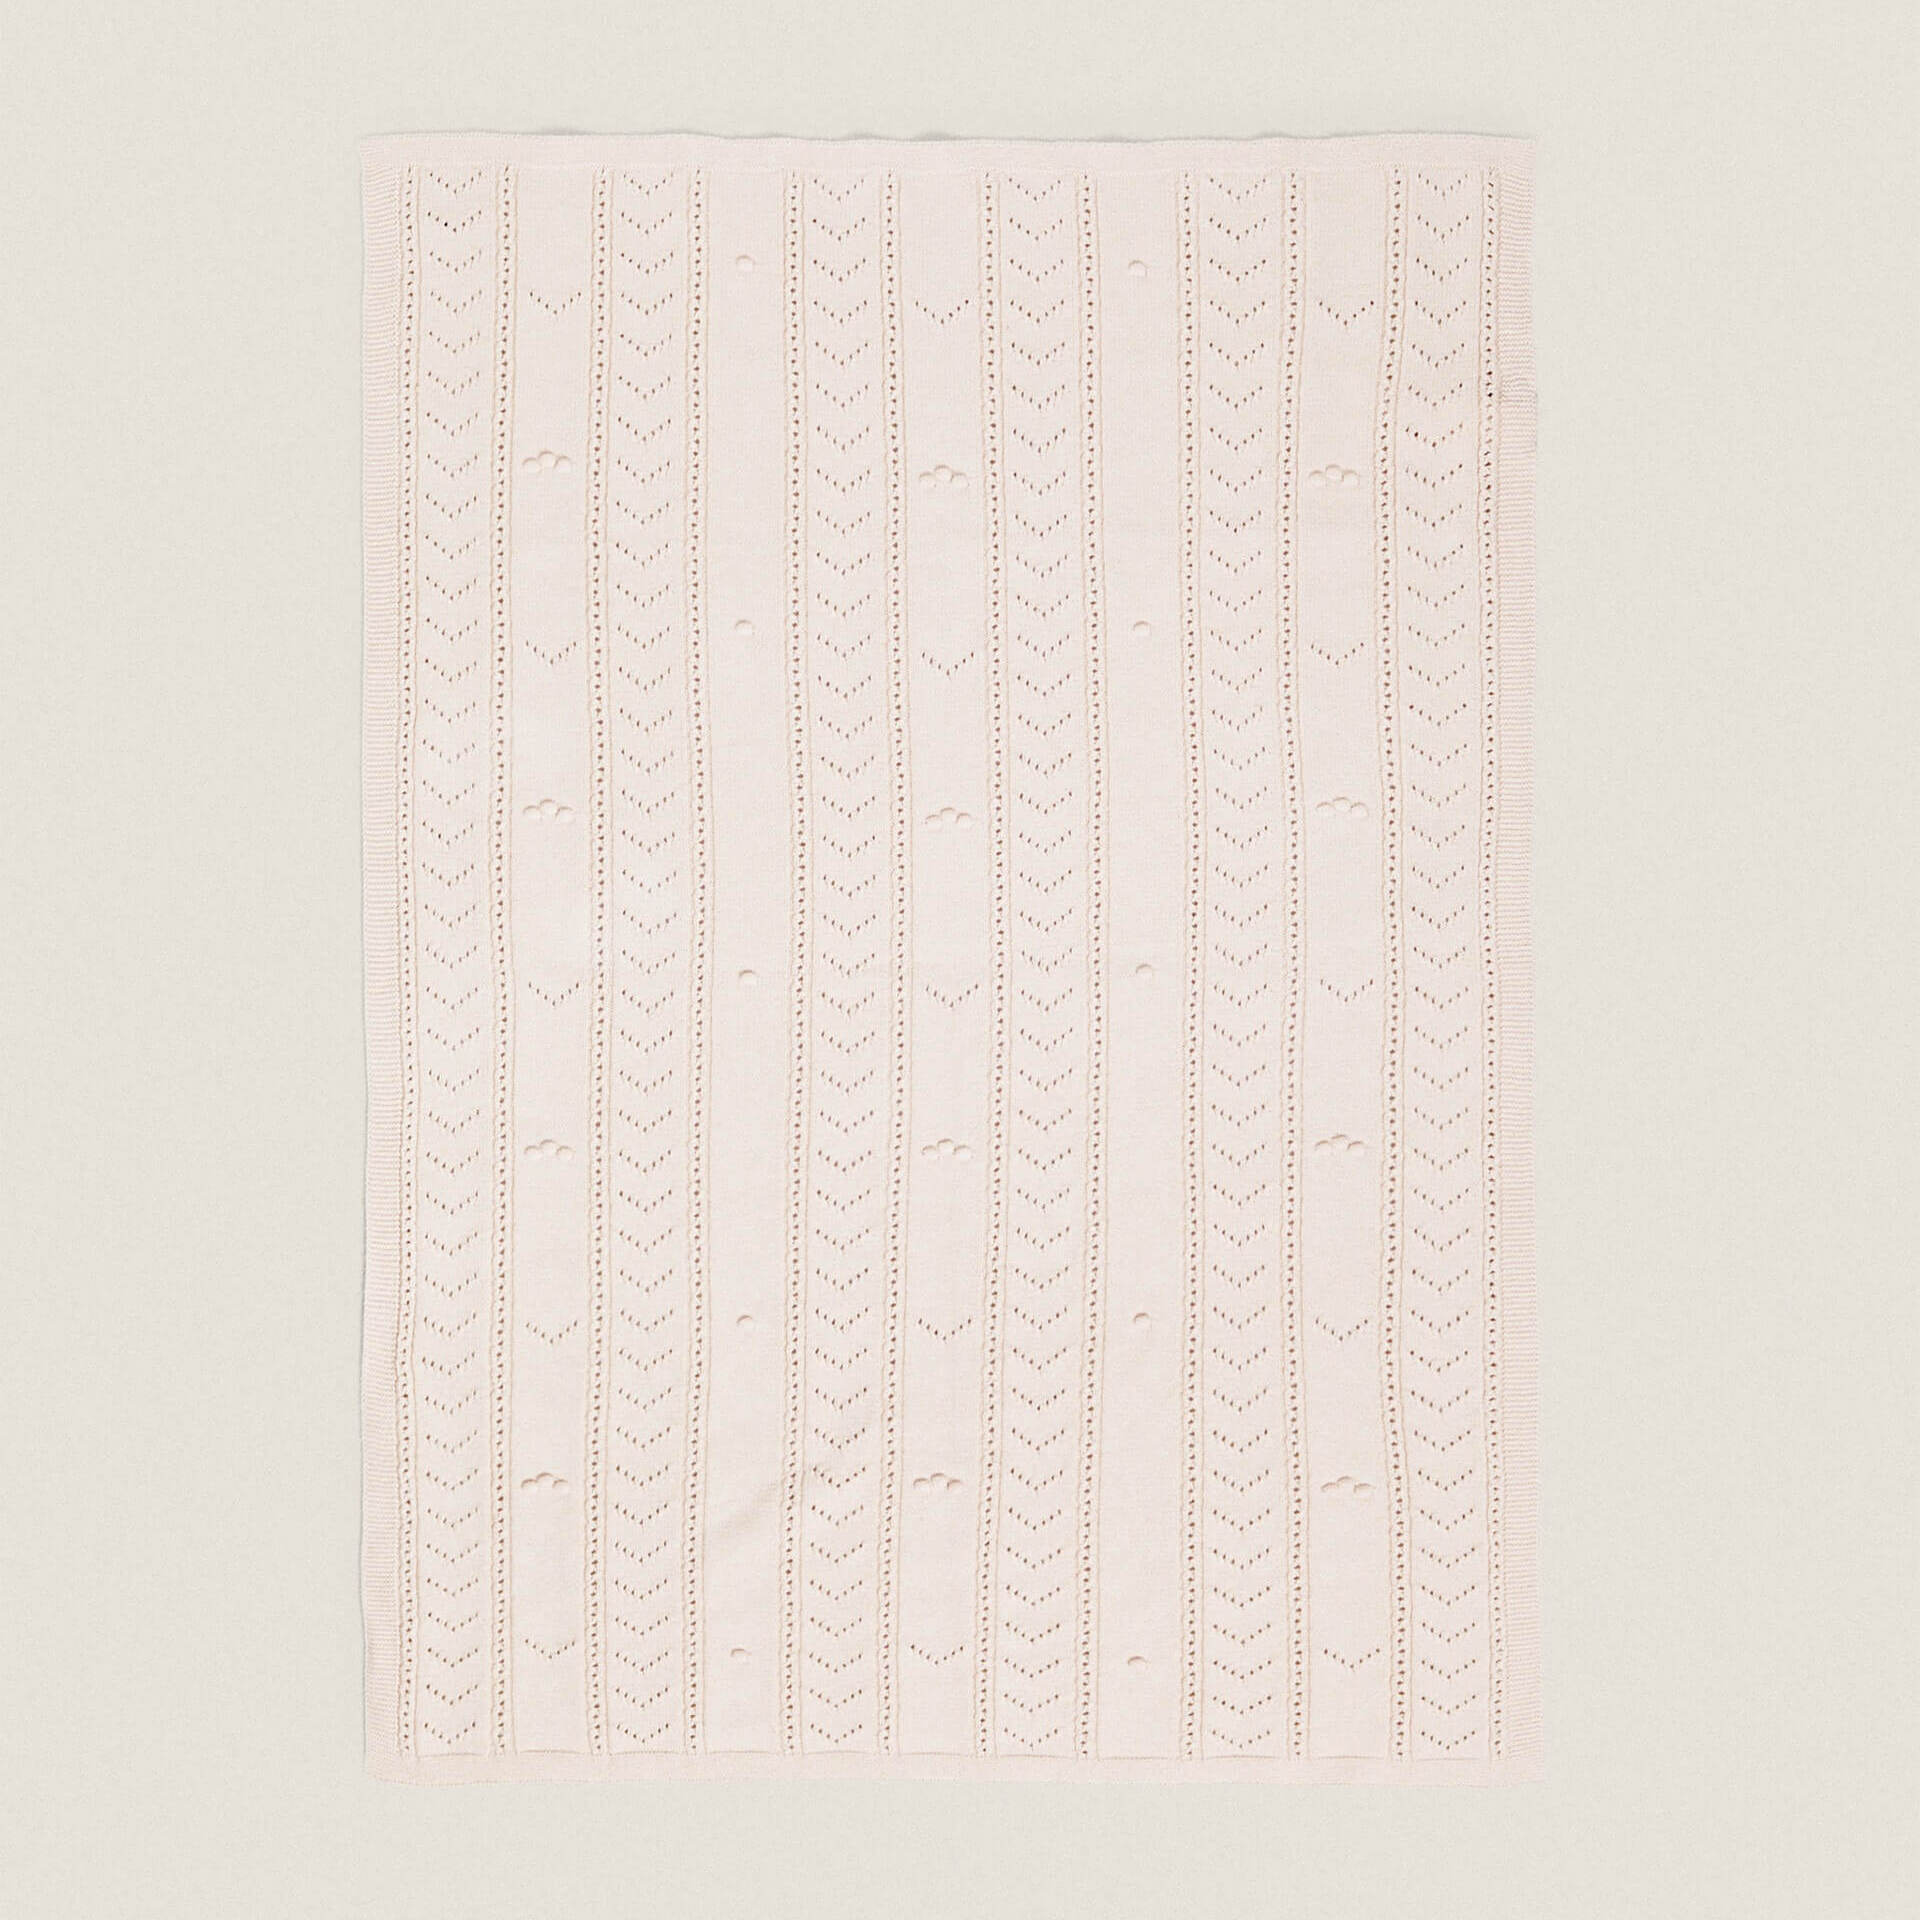 Детское одеяло Zara Home Open-Knit, розовый муслиновое клетчатое детское хлопковое одеяло 120x120 из бамбука весна лето осень одеяло для новорожденных от 0 до 36 месяцев одеяла и пеленки